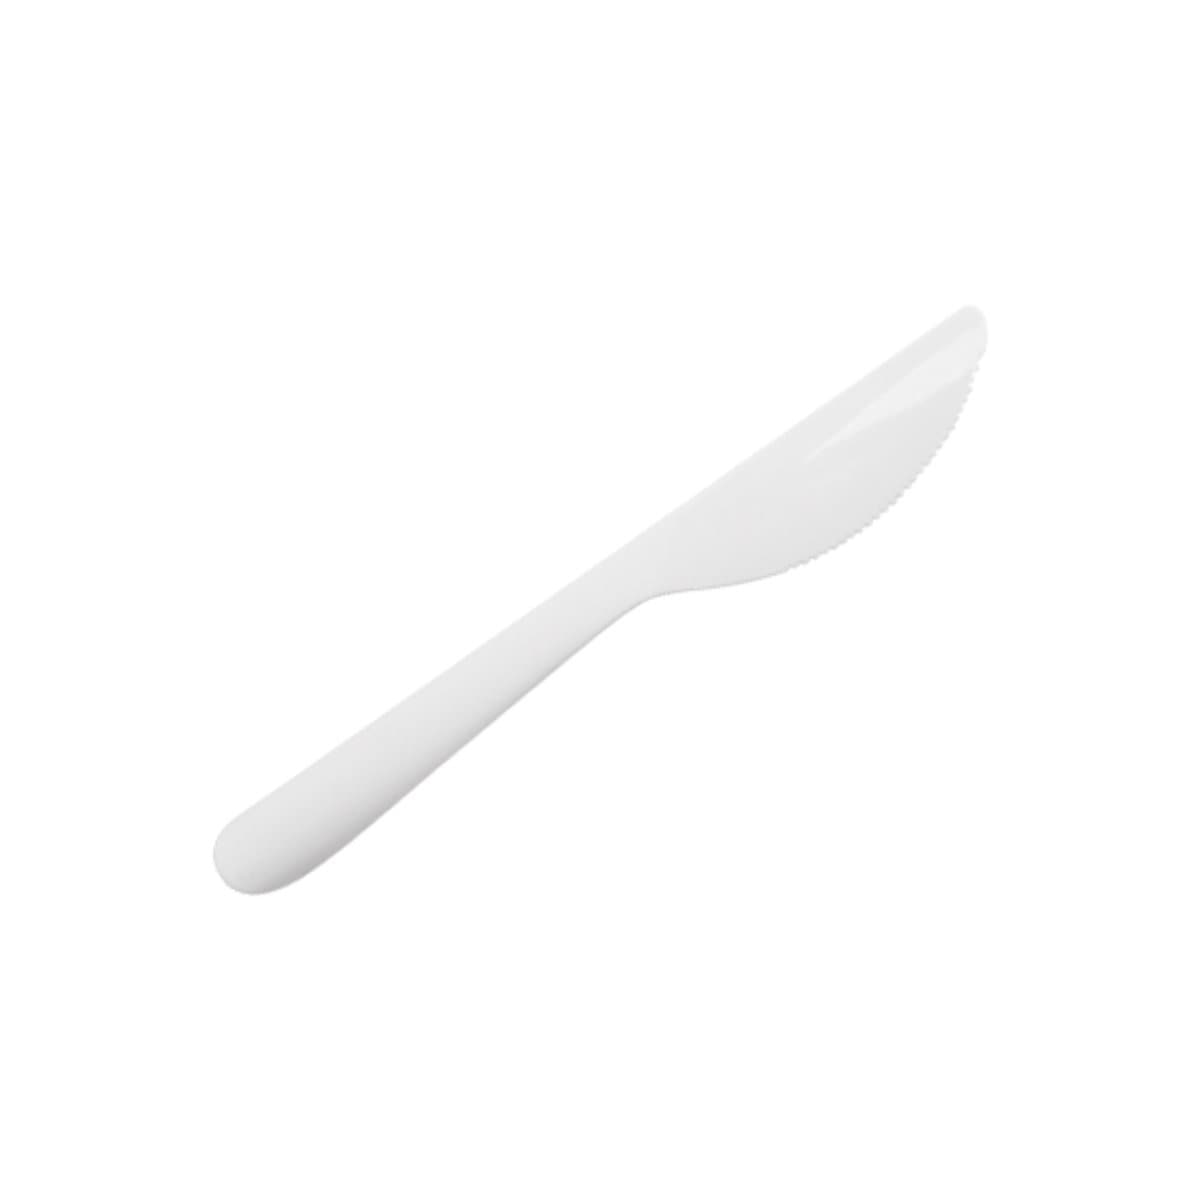 Falconpack Premium Plastic Knife, medium, 25/pack, White